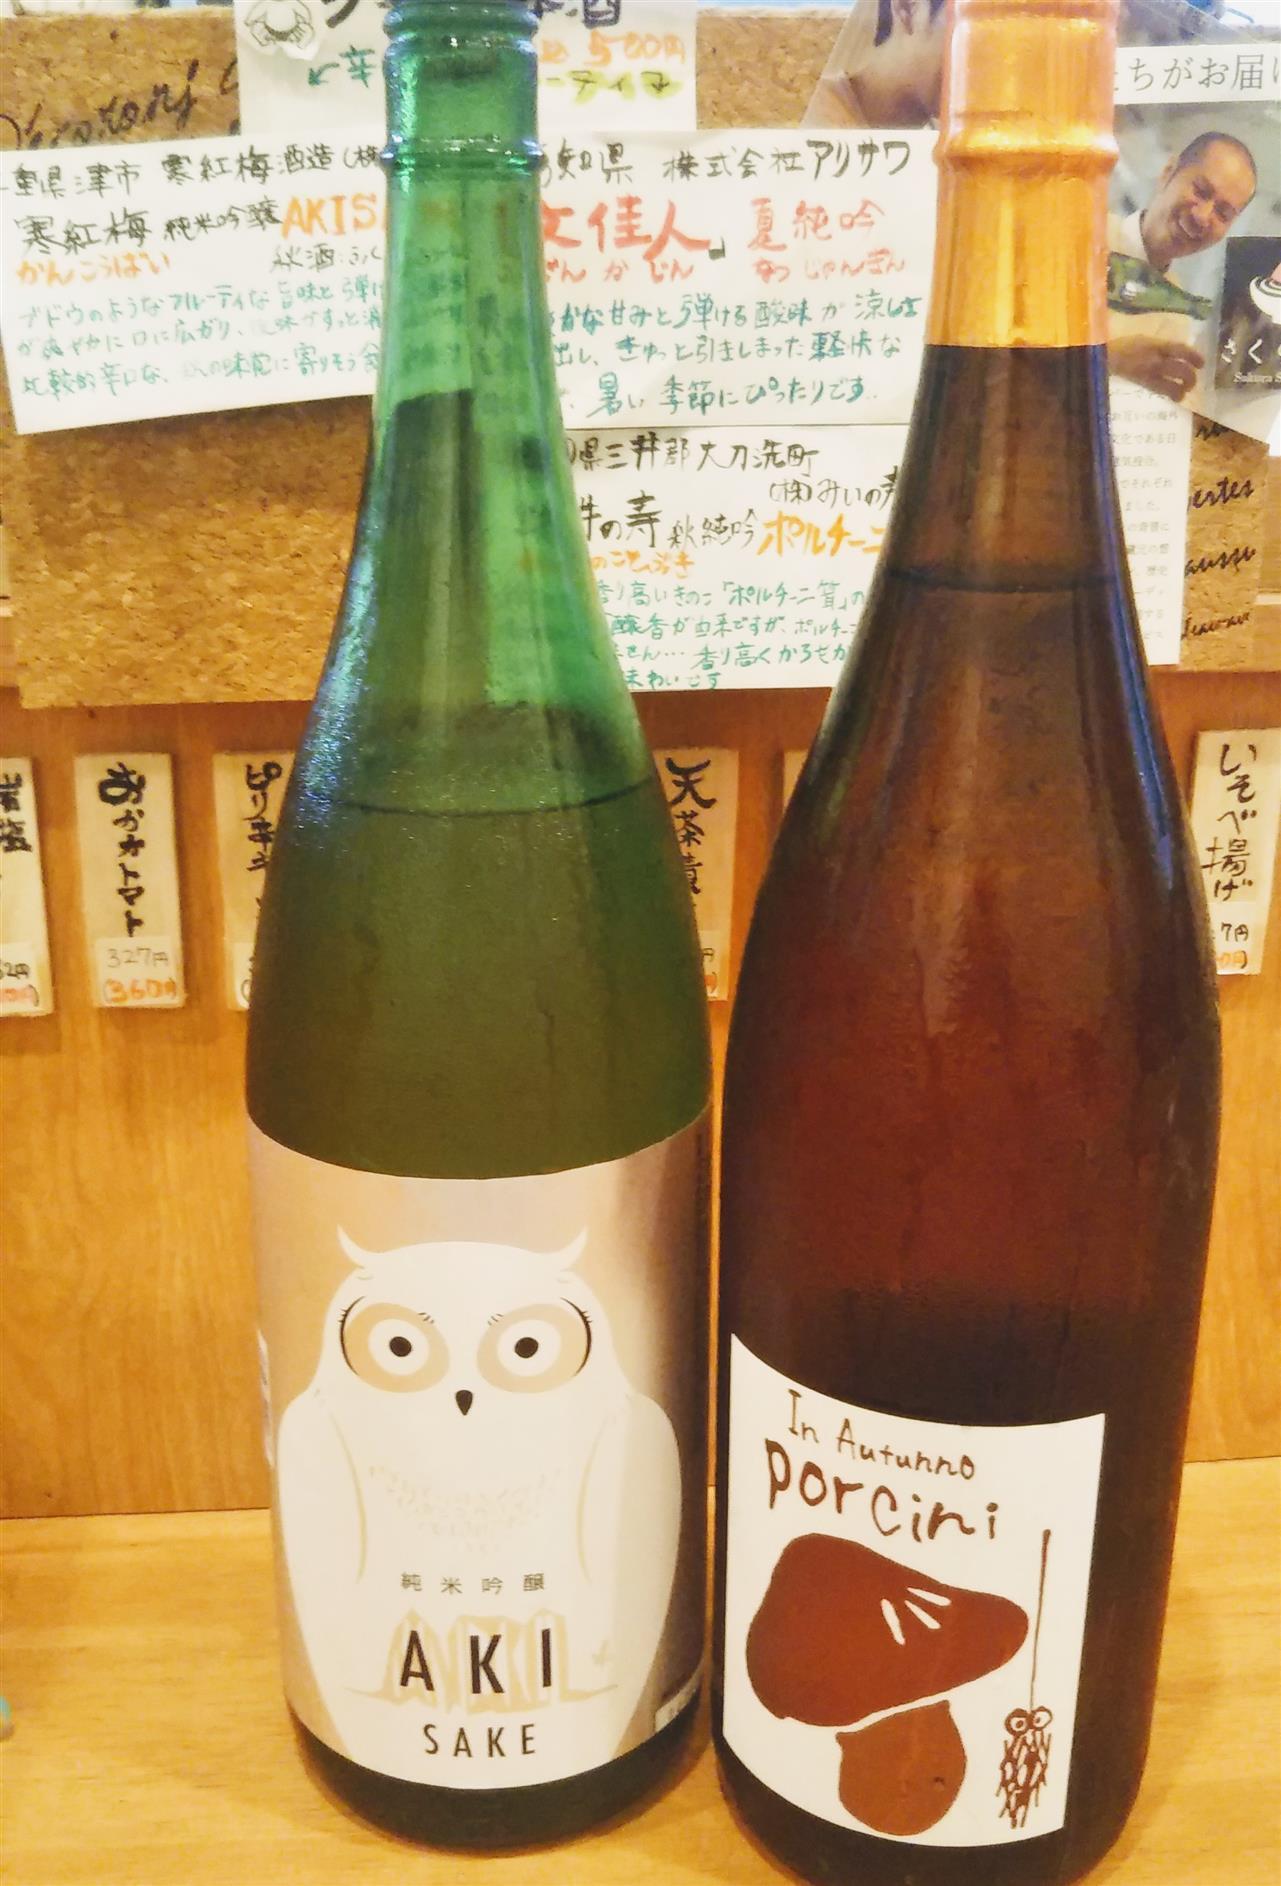 グラス日本酒・秋の味わい、ご紹介です。